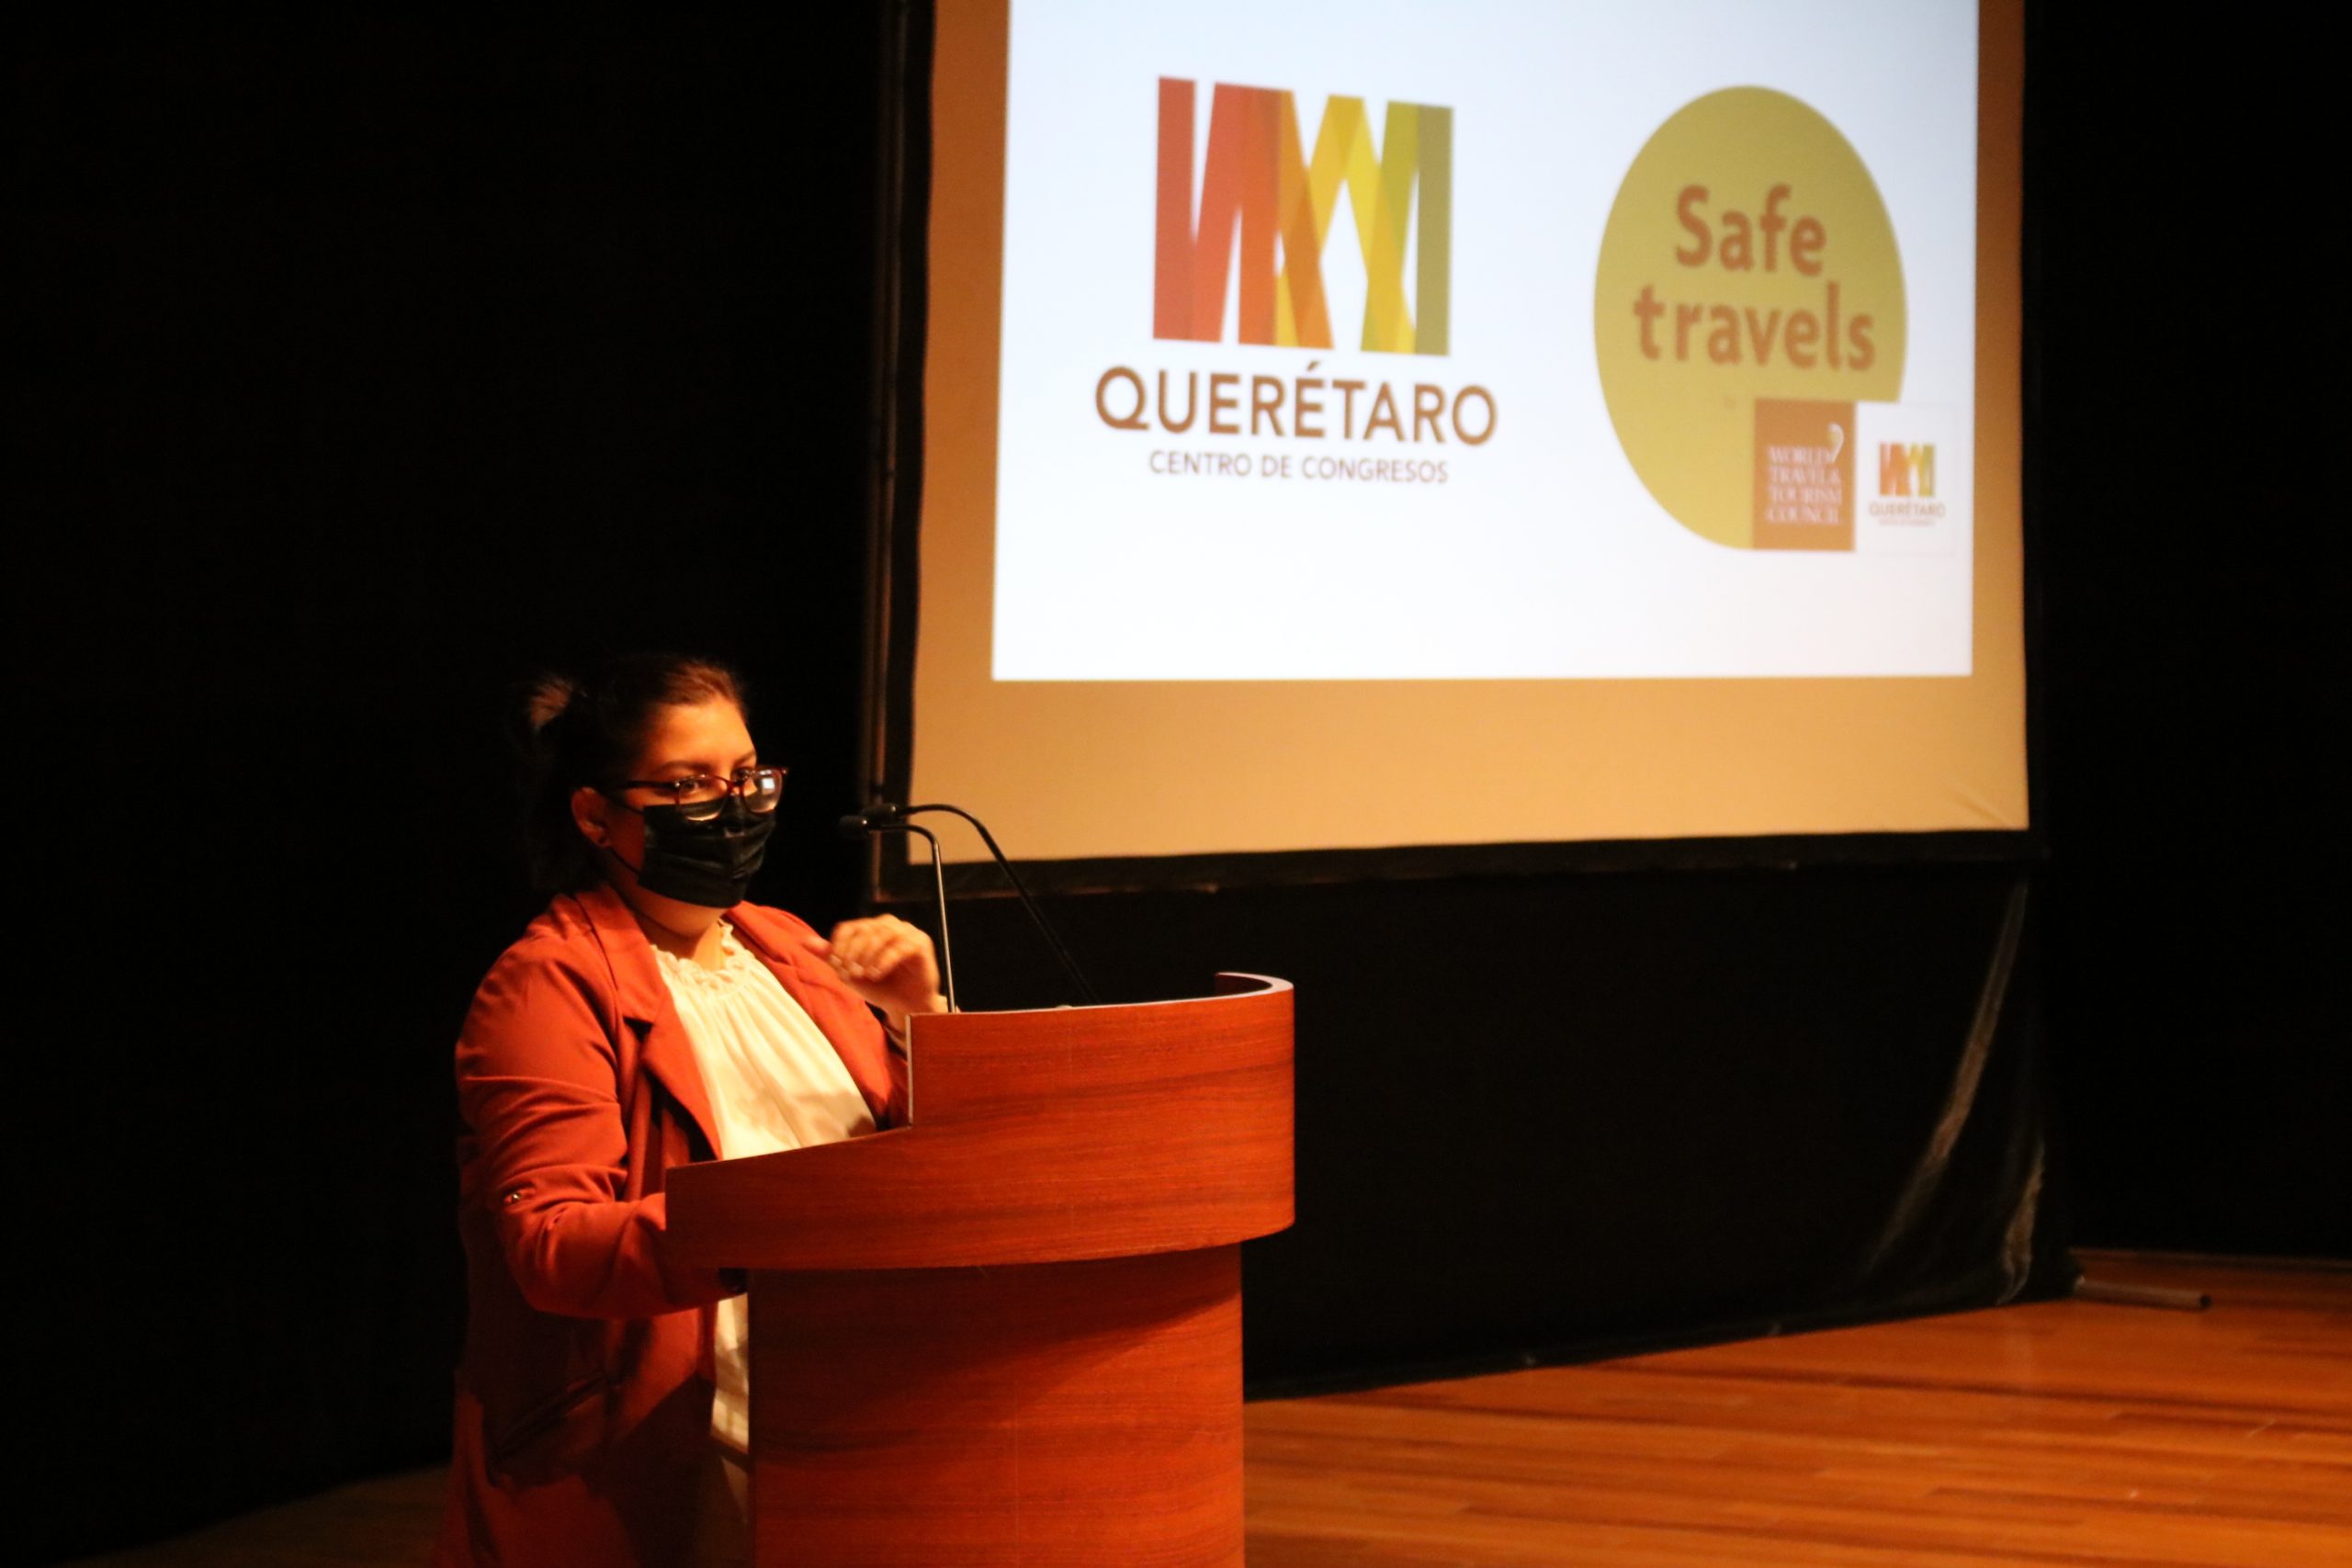 Querétaro Centro de Congresos y Teatro Metropolitano reciben Sello Safe Travels